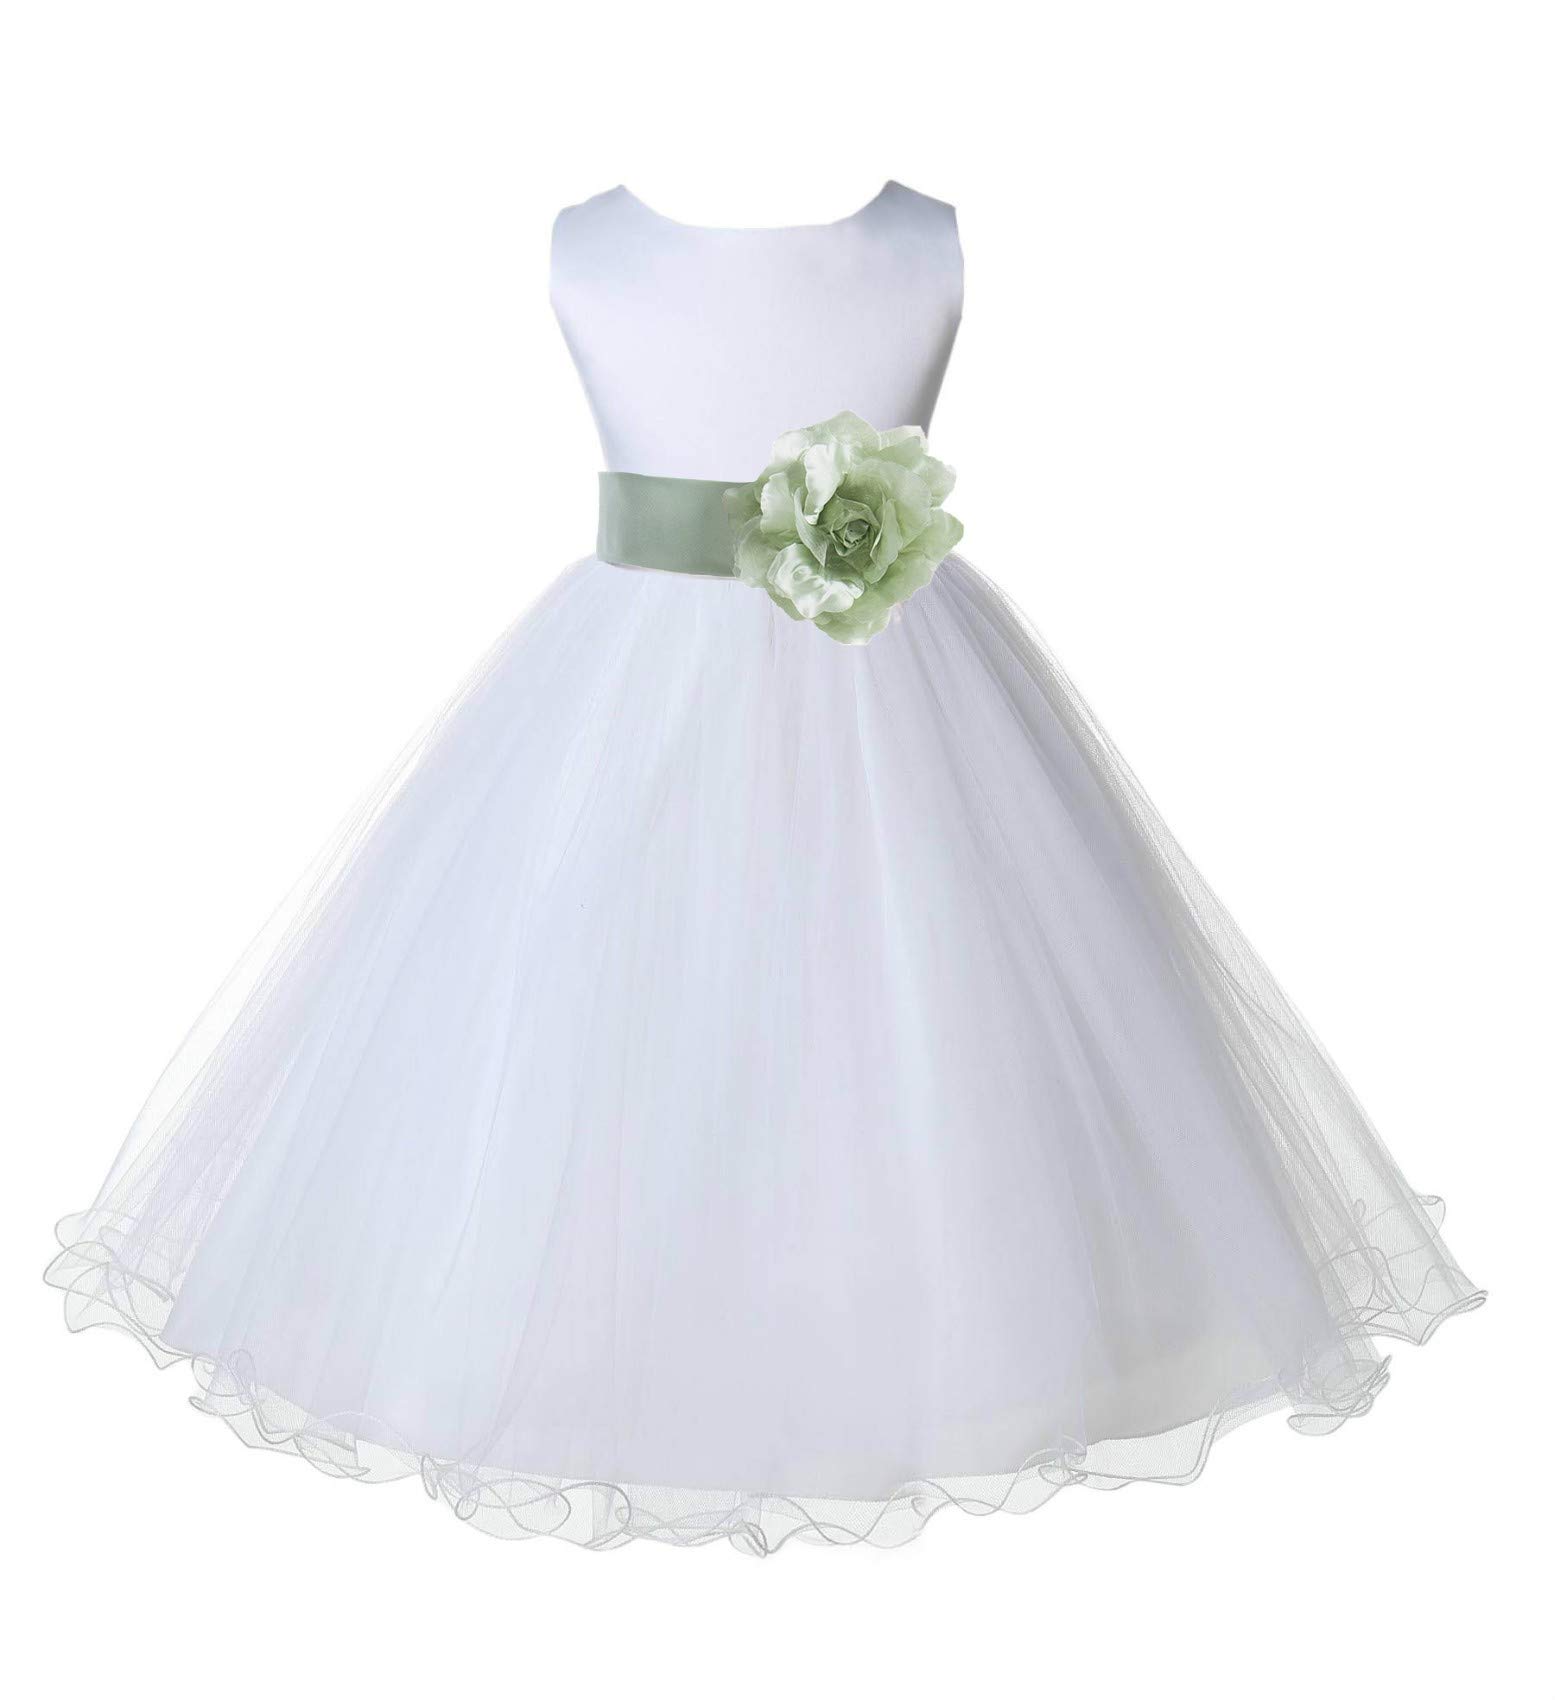 Wedding Pageant White Flower Girl Rattail Edge Tulle Dress